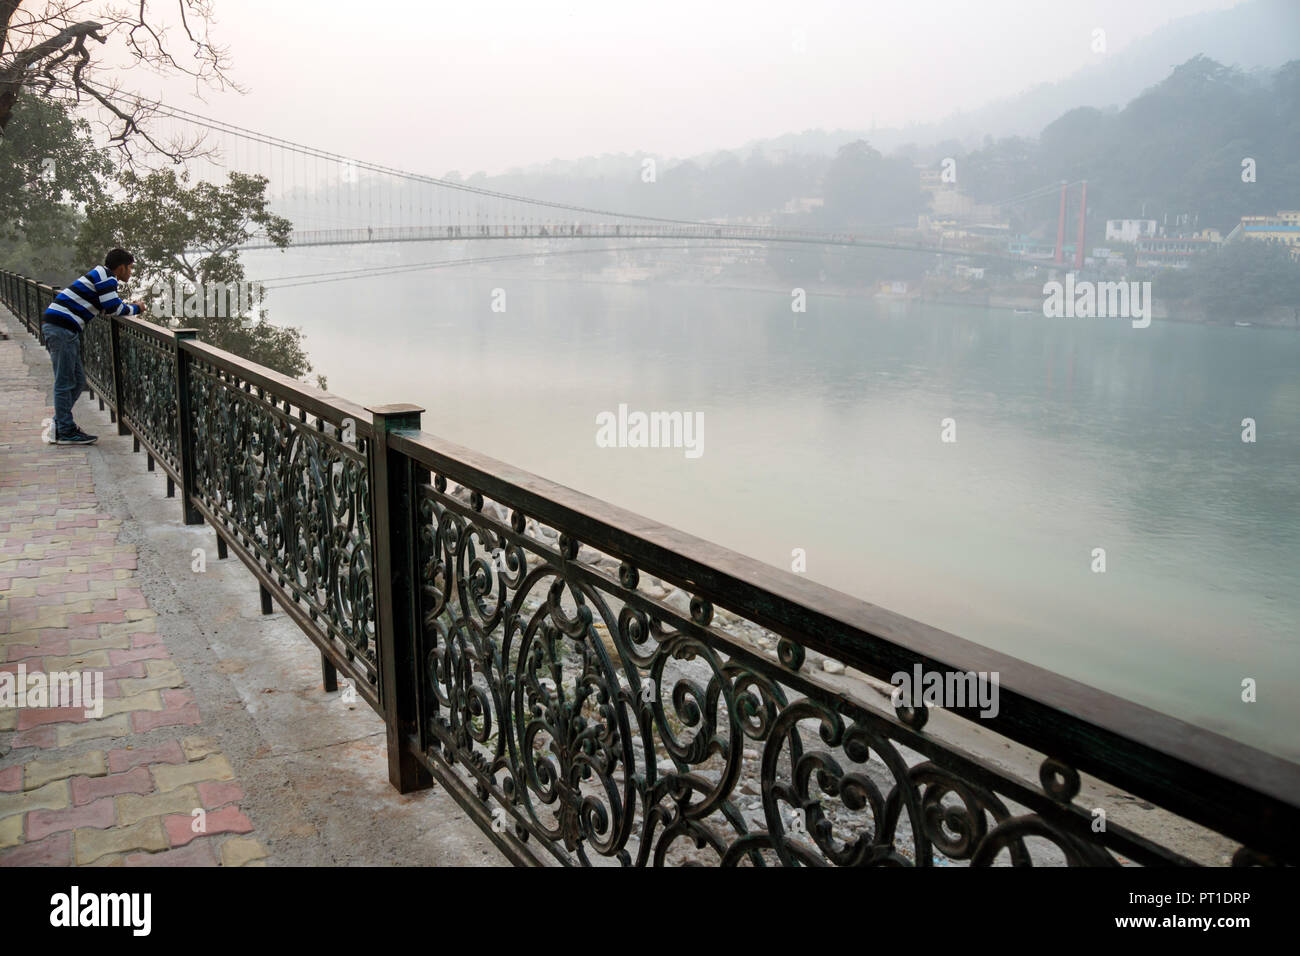 Belle vue sur la rivière du Gange à Rishikesh. Tourisme indien bénéficie d'une vue magnifique sur le Gange. Rishikesh Inde, le 10 janvier, 2018 Banque D'Images